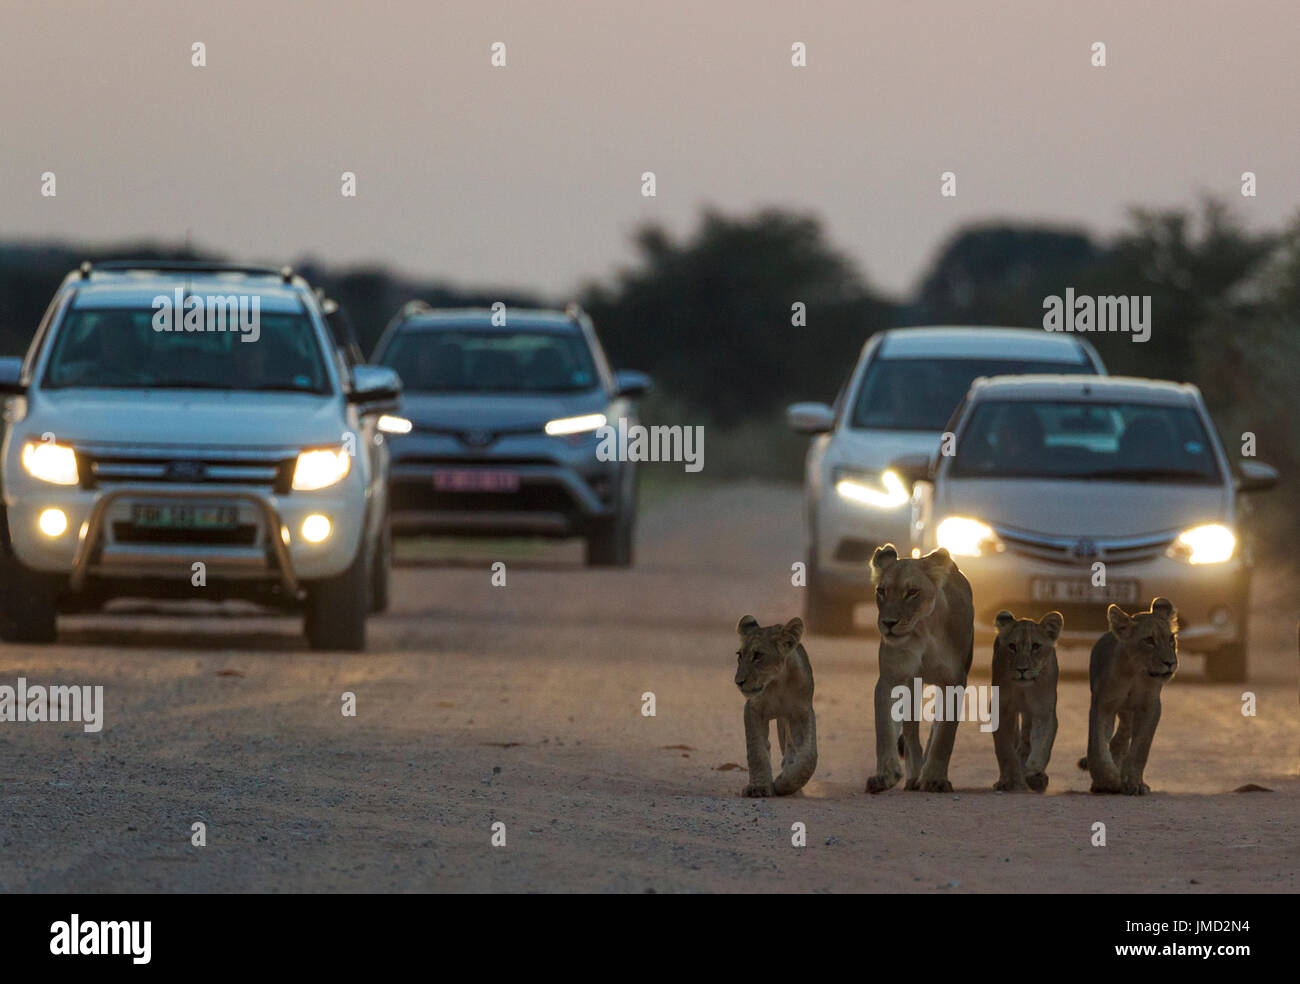 Leone africano ( Panthera leo) femmina con tre cuccioli a camminare sulla strada all'alba. Le vetture dietro solo a sinistra un accampamento per la mattina game drive Foto Stock